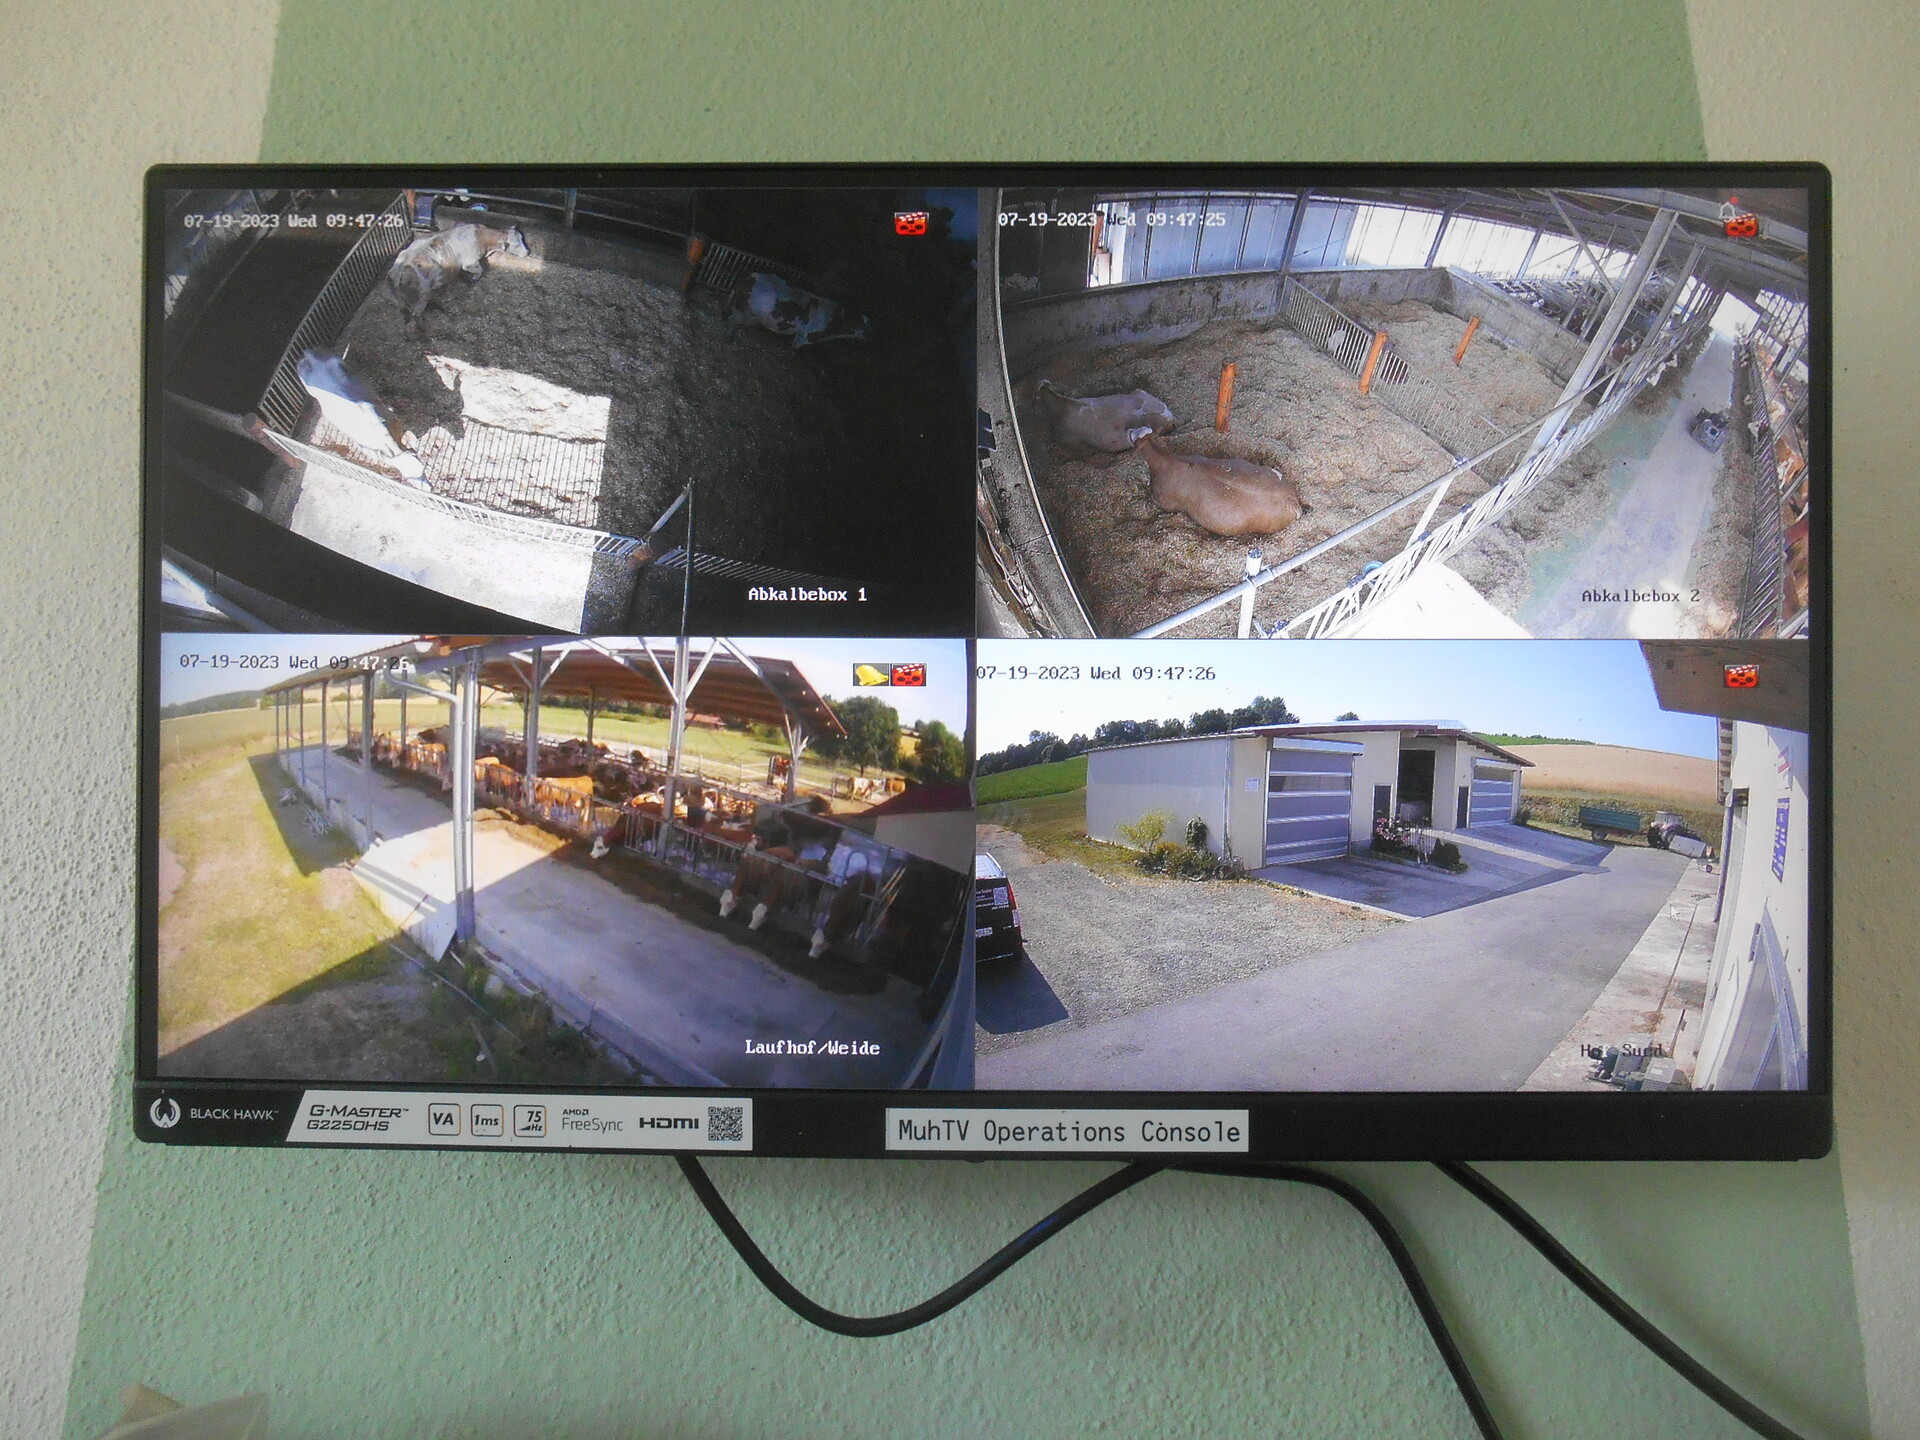 Detailbild des überwachungsmonitors im Stall, zeigt Mehrfachansicht verschiedener Kameras im Stall